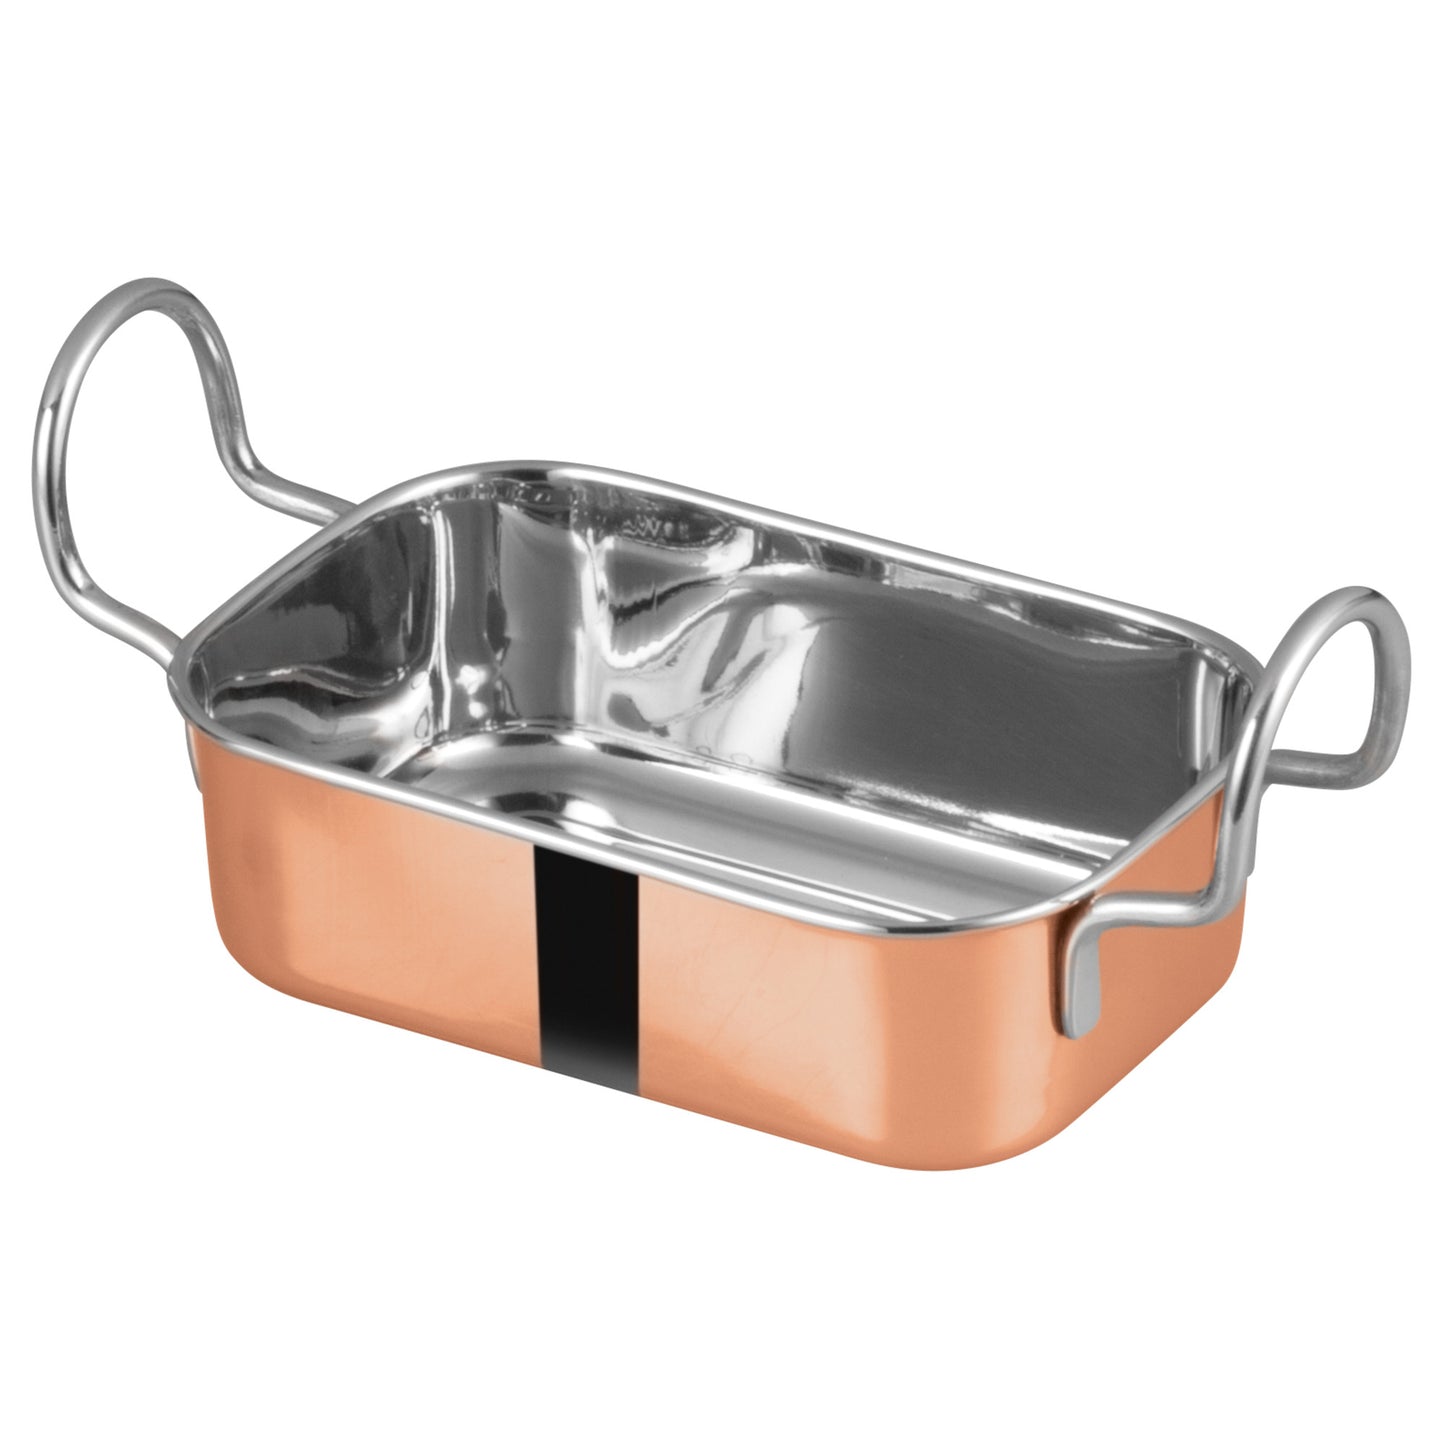 DDSB-203C - Mini Roasting Pan, Copper-Plated - 5" x 3-3/8"